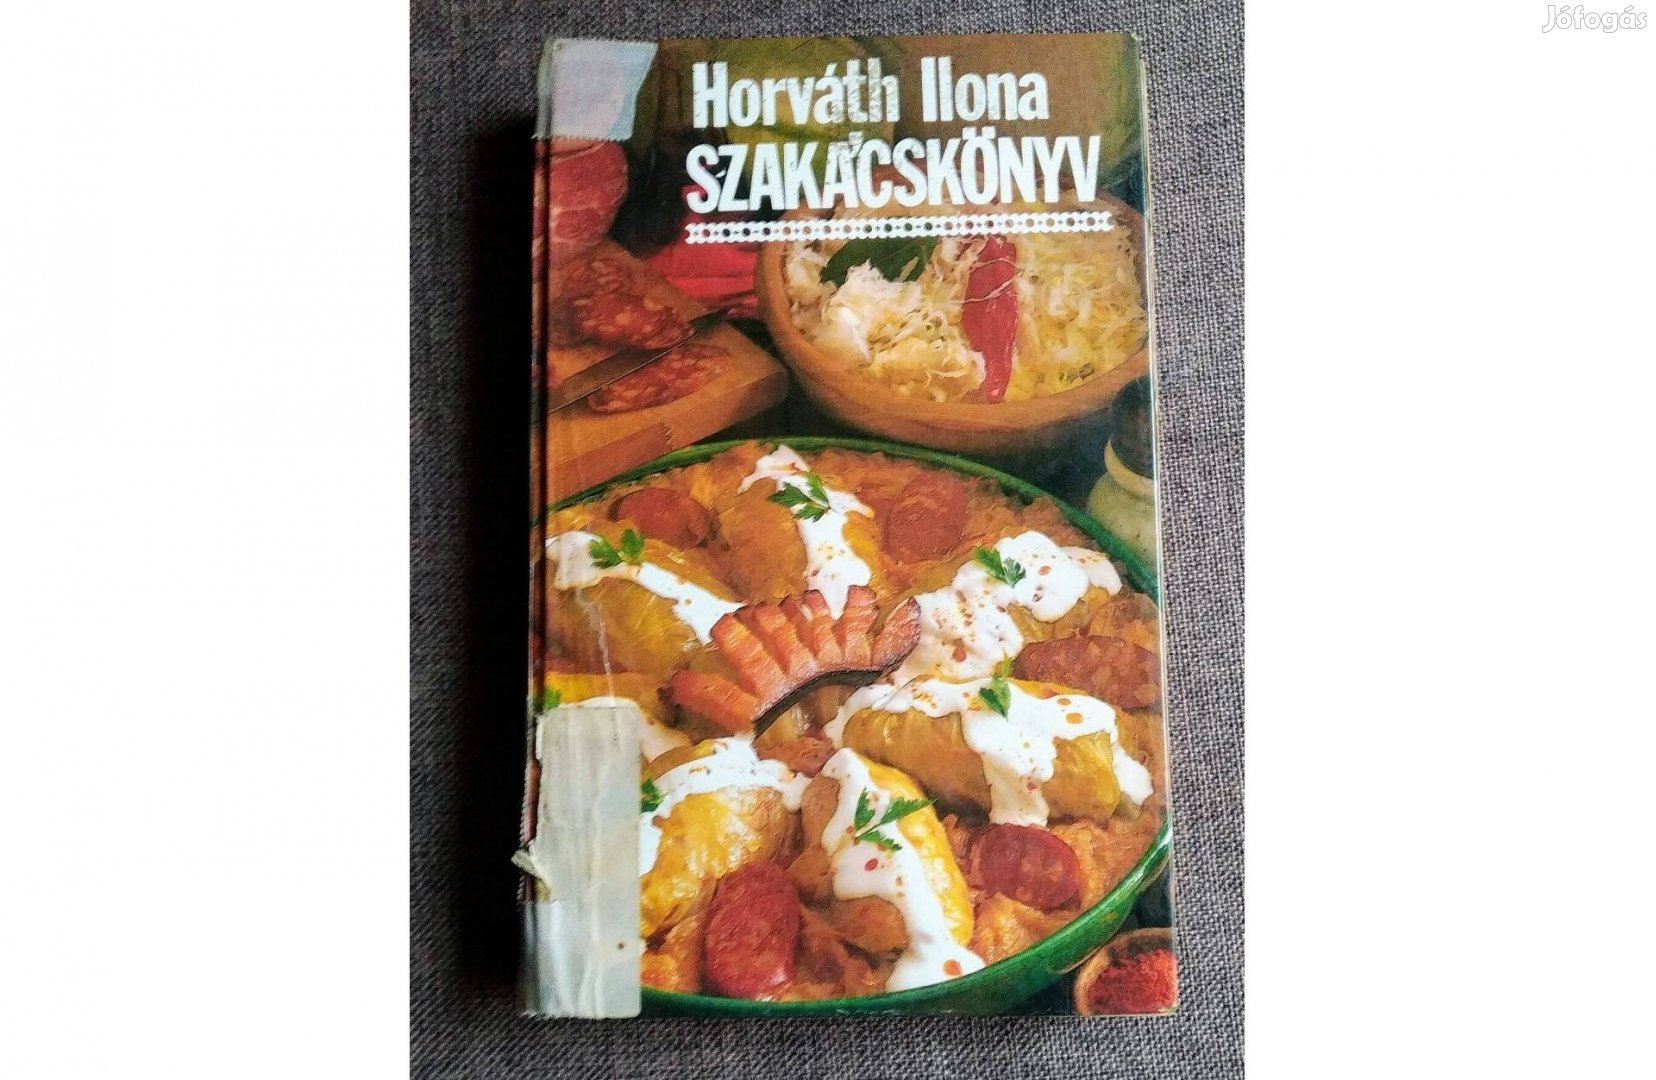 Horváth Ilona szakácskönyv